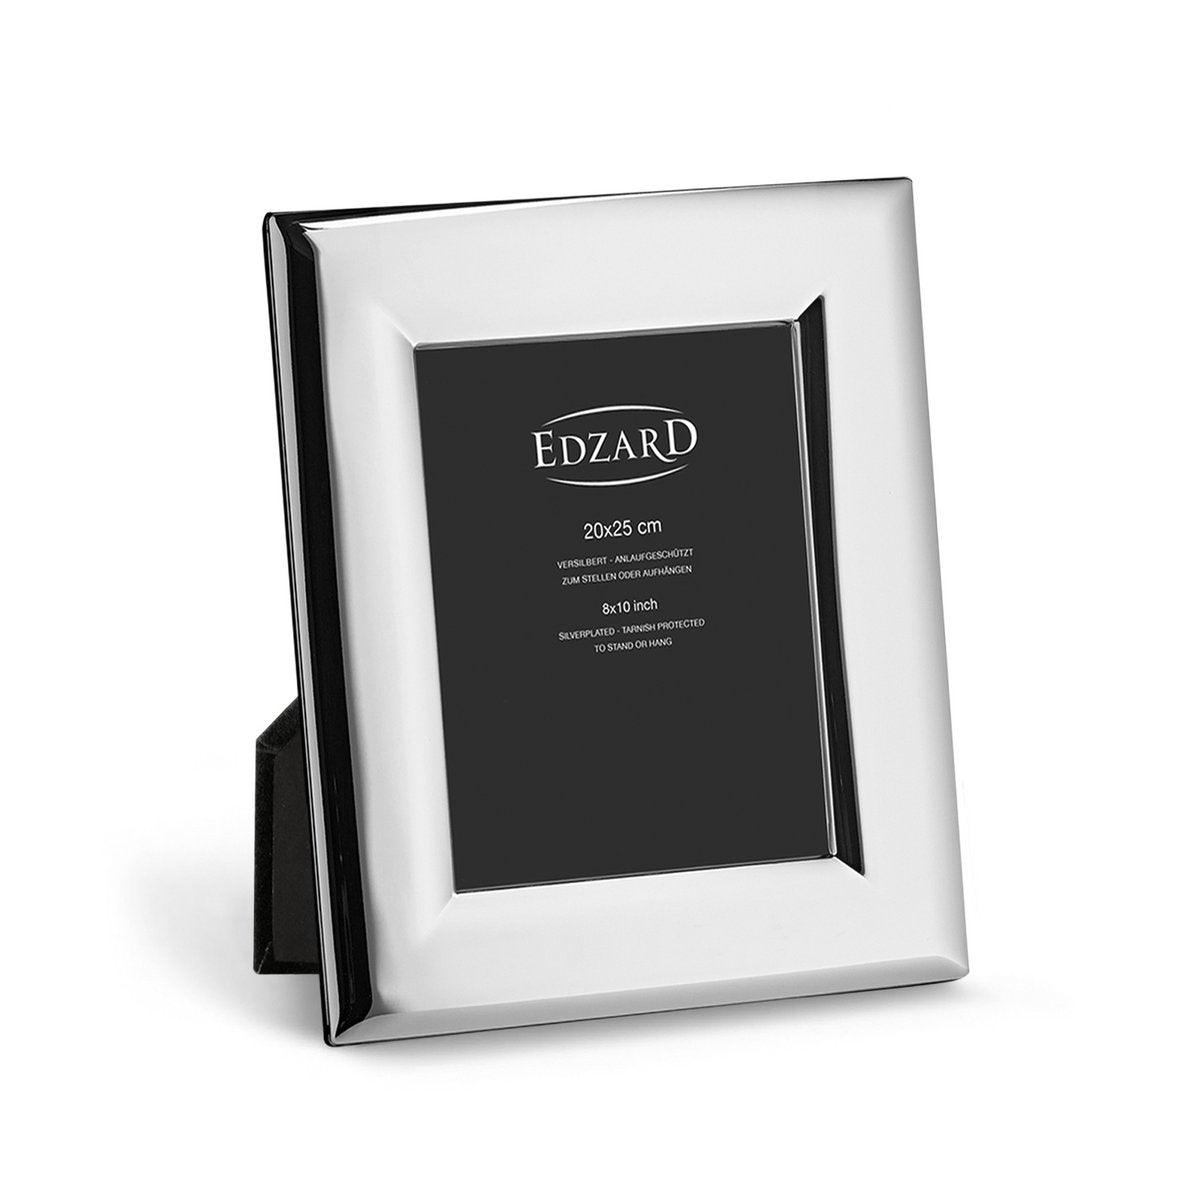 EDZARD Fotorahmen Positano für Foto 20 x 25 cm, edel versilbert, anlaufgeschützt, mit 2 Aufhängern - HomeDesign Knaus